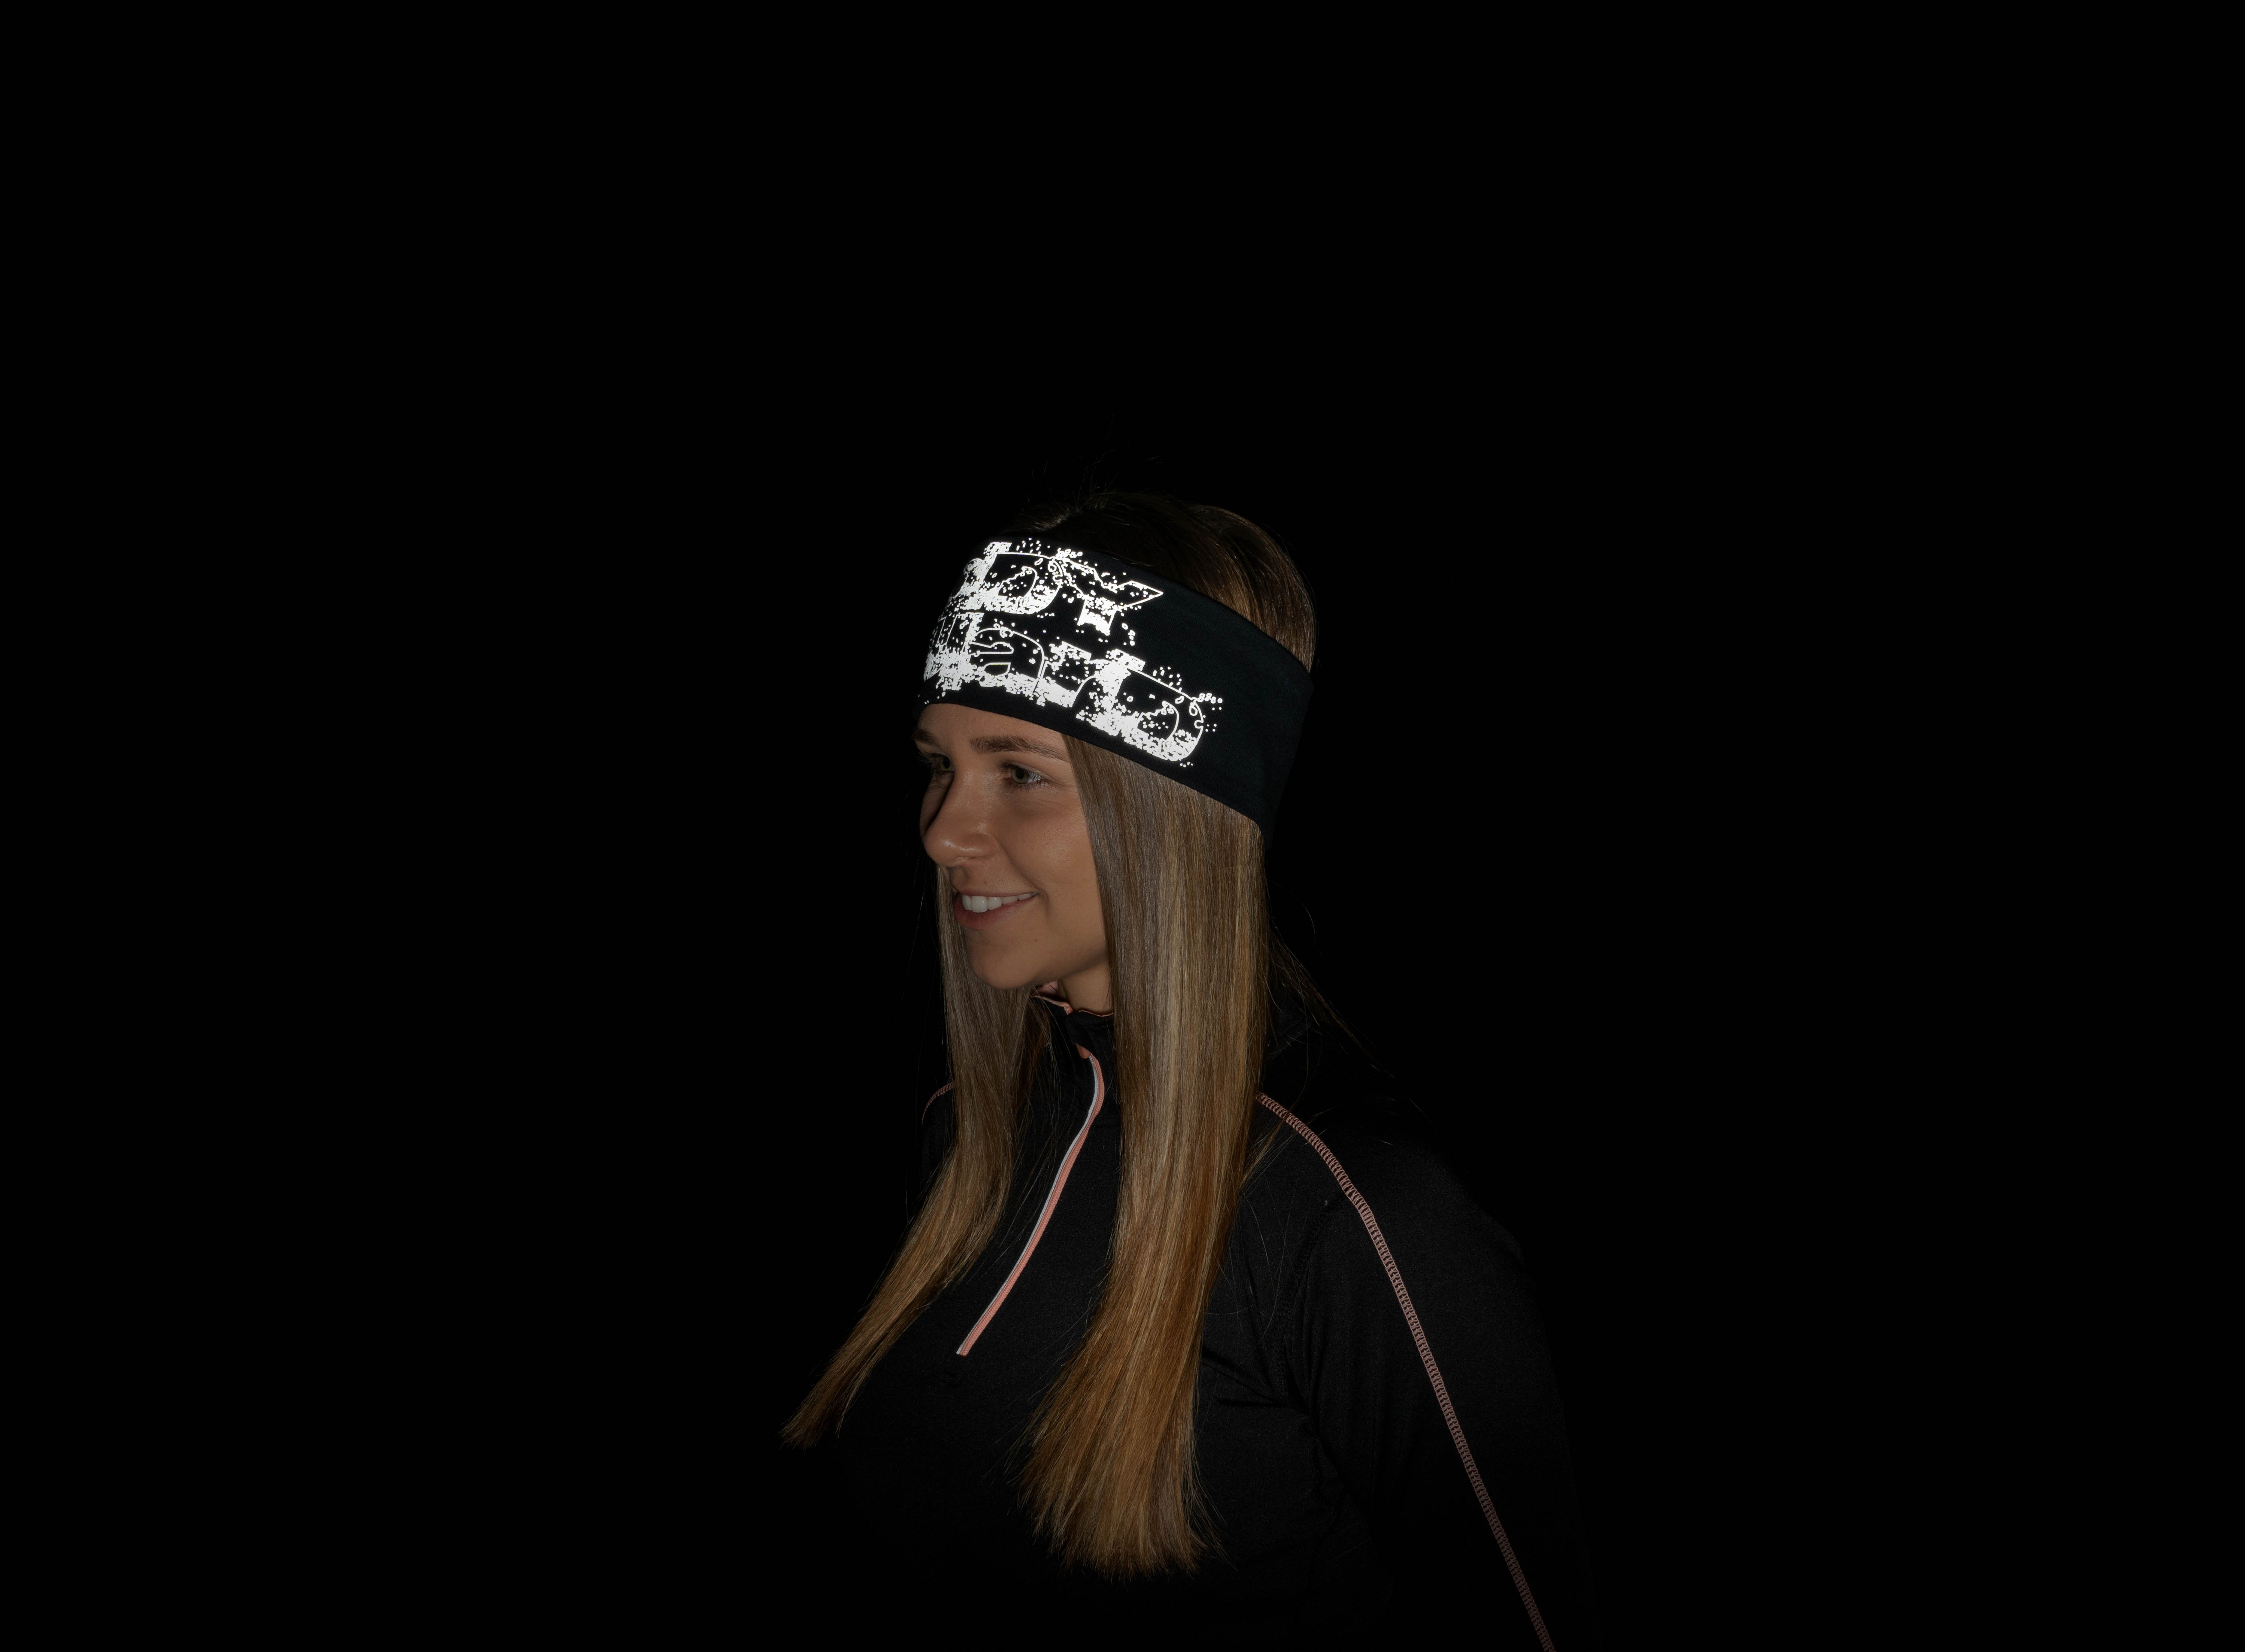 Safety Maker 44562 Omkeerbare hoofdband reflecterend, voor joggen, hardlopen, sport, hoofdband, oorwarmers heren/vrouwen met reflector blauw-zwart